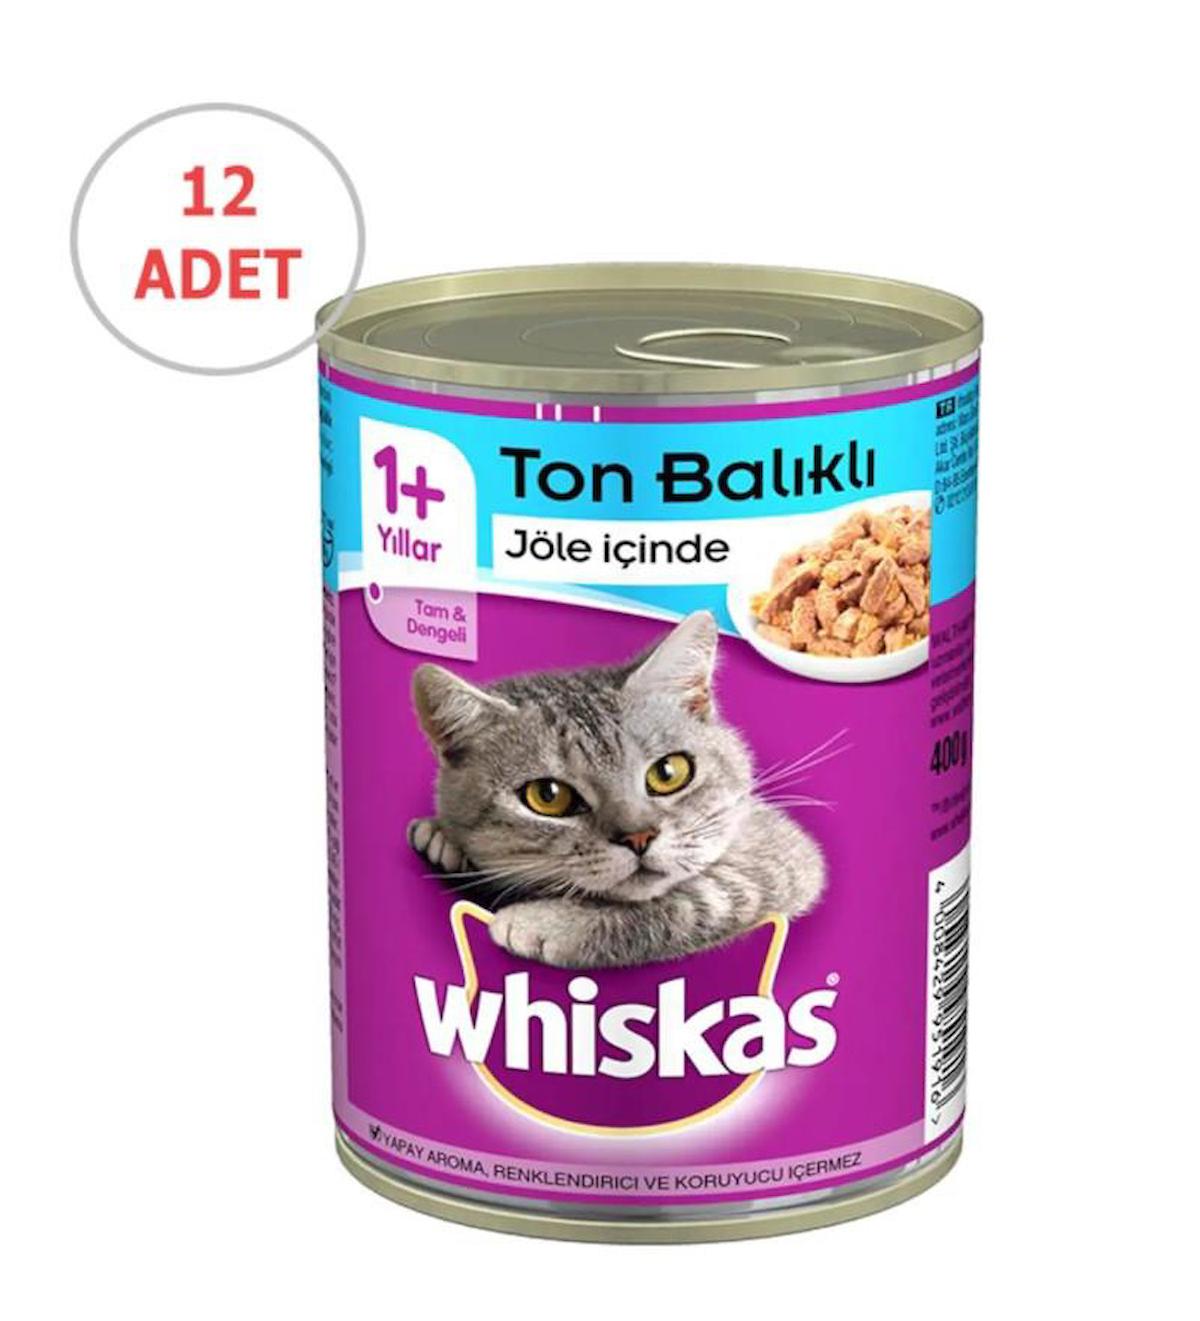 Whiskas Tam ve Dengeli Ton Balıklı Soslu Yetişkin Yaş Kedi Maması 12x400 gr